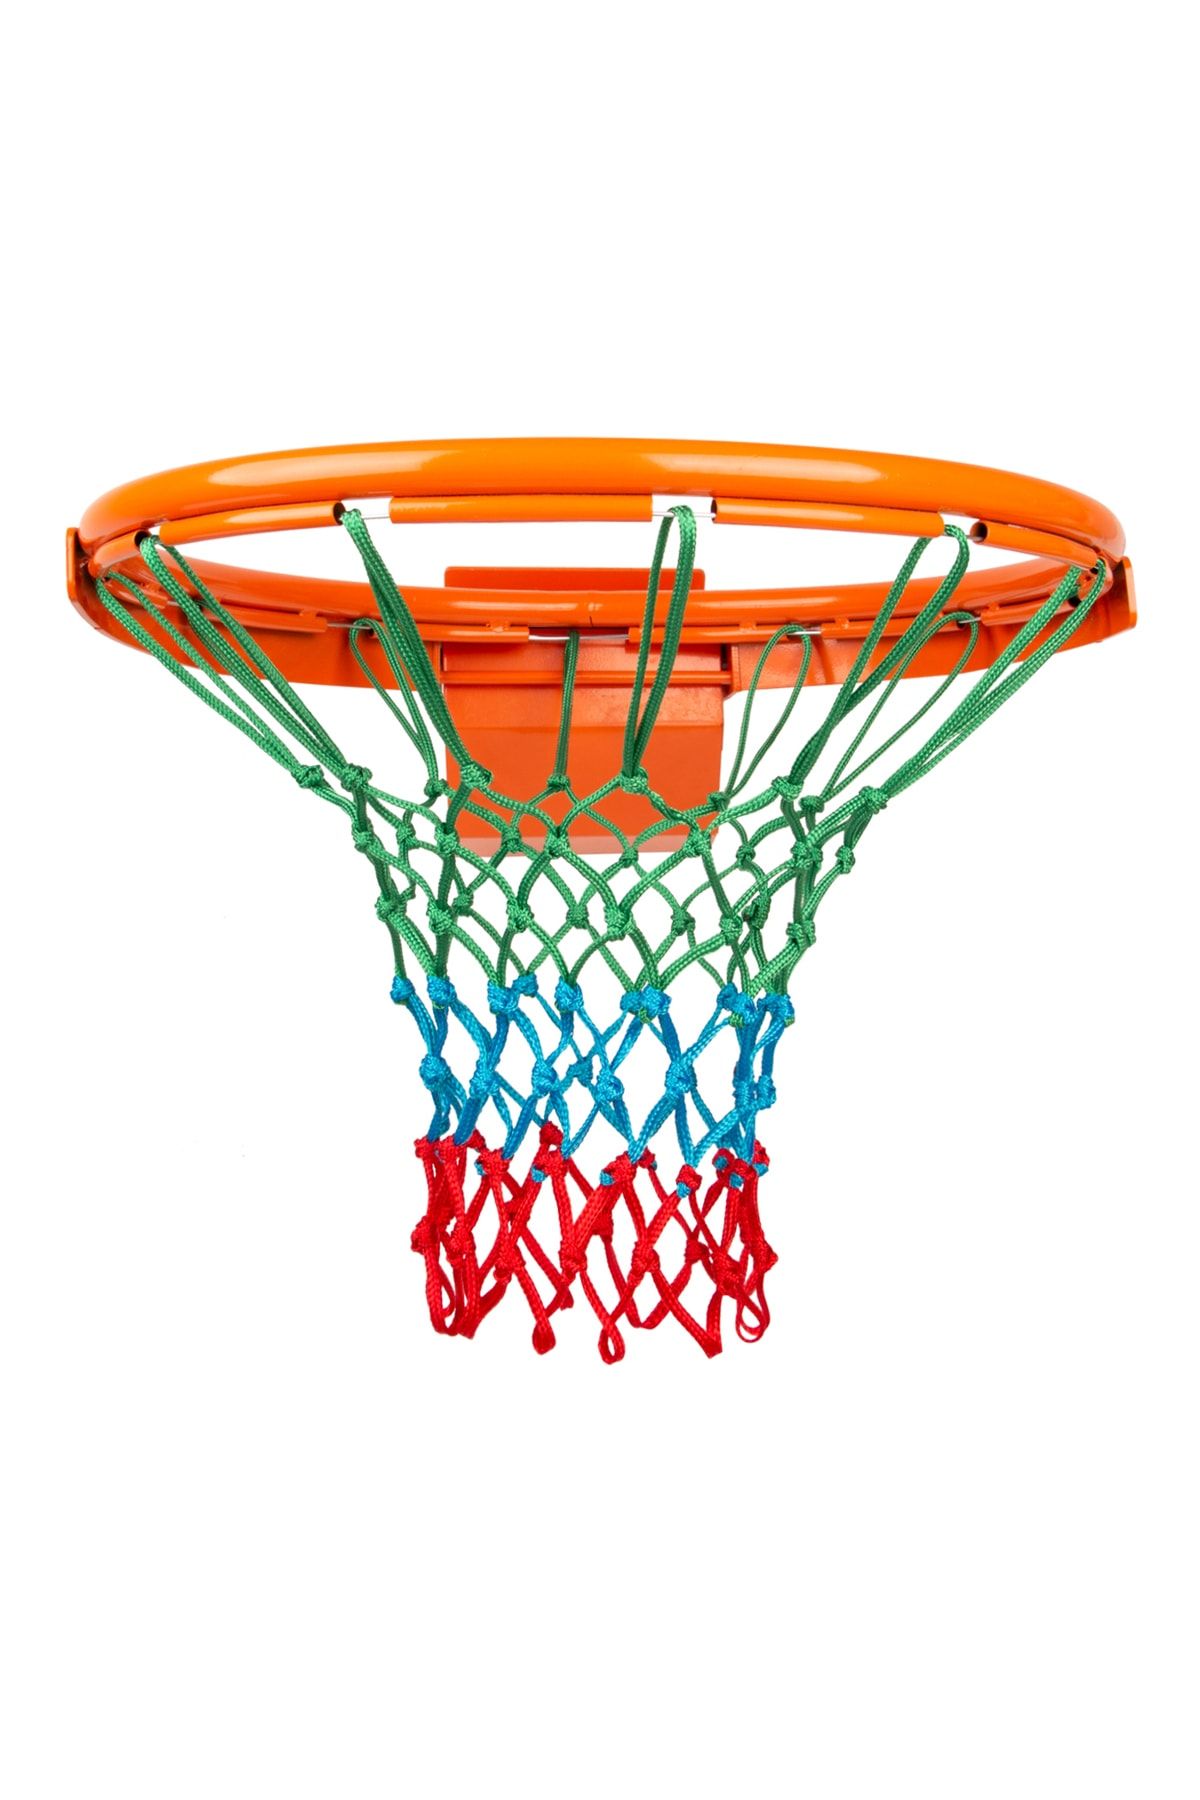 Nodes 5mm - Profesyonel - Basketbol Pota Filesi Ağı - 3 Renk - 1 adet